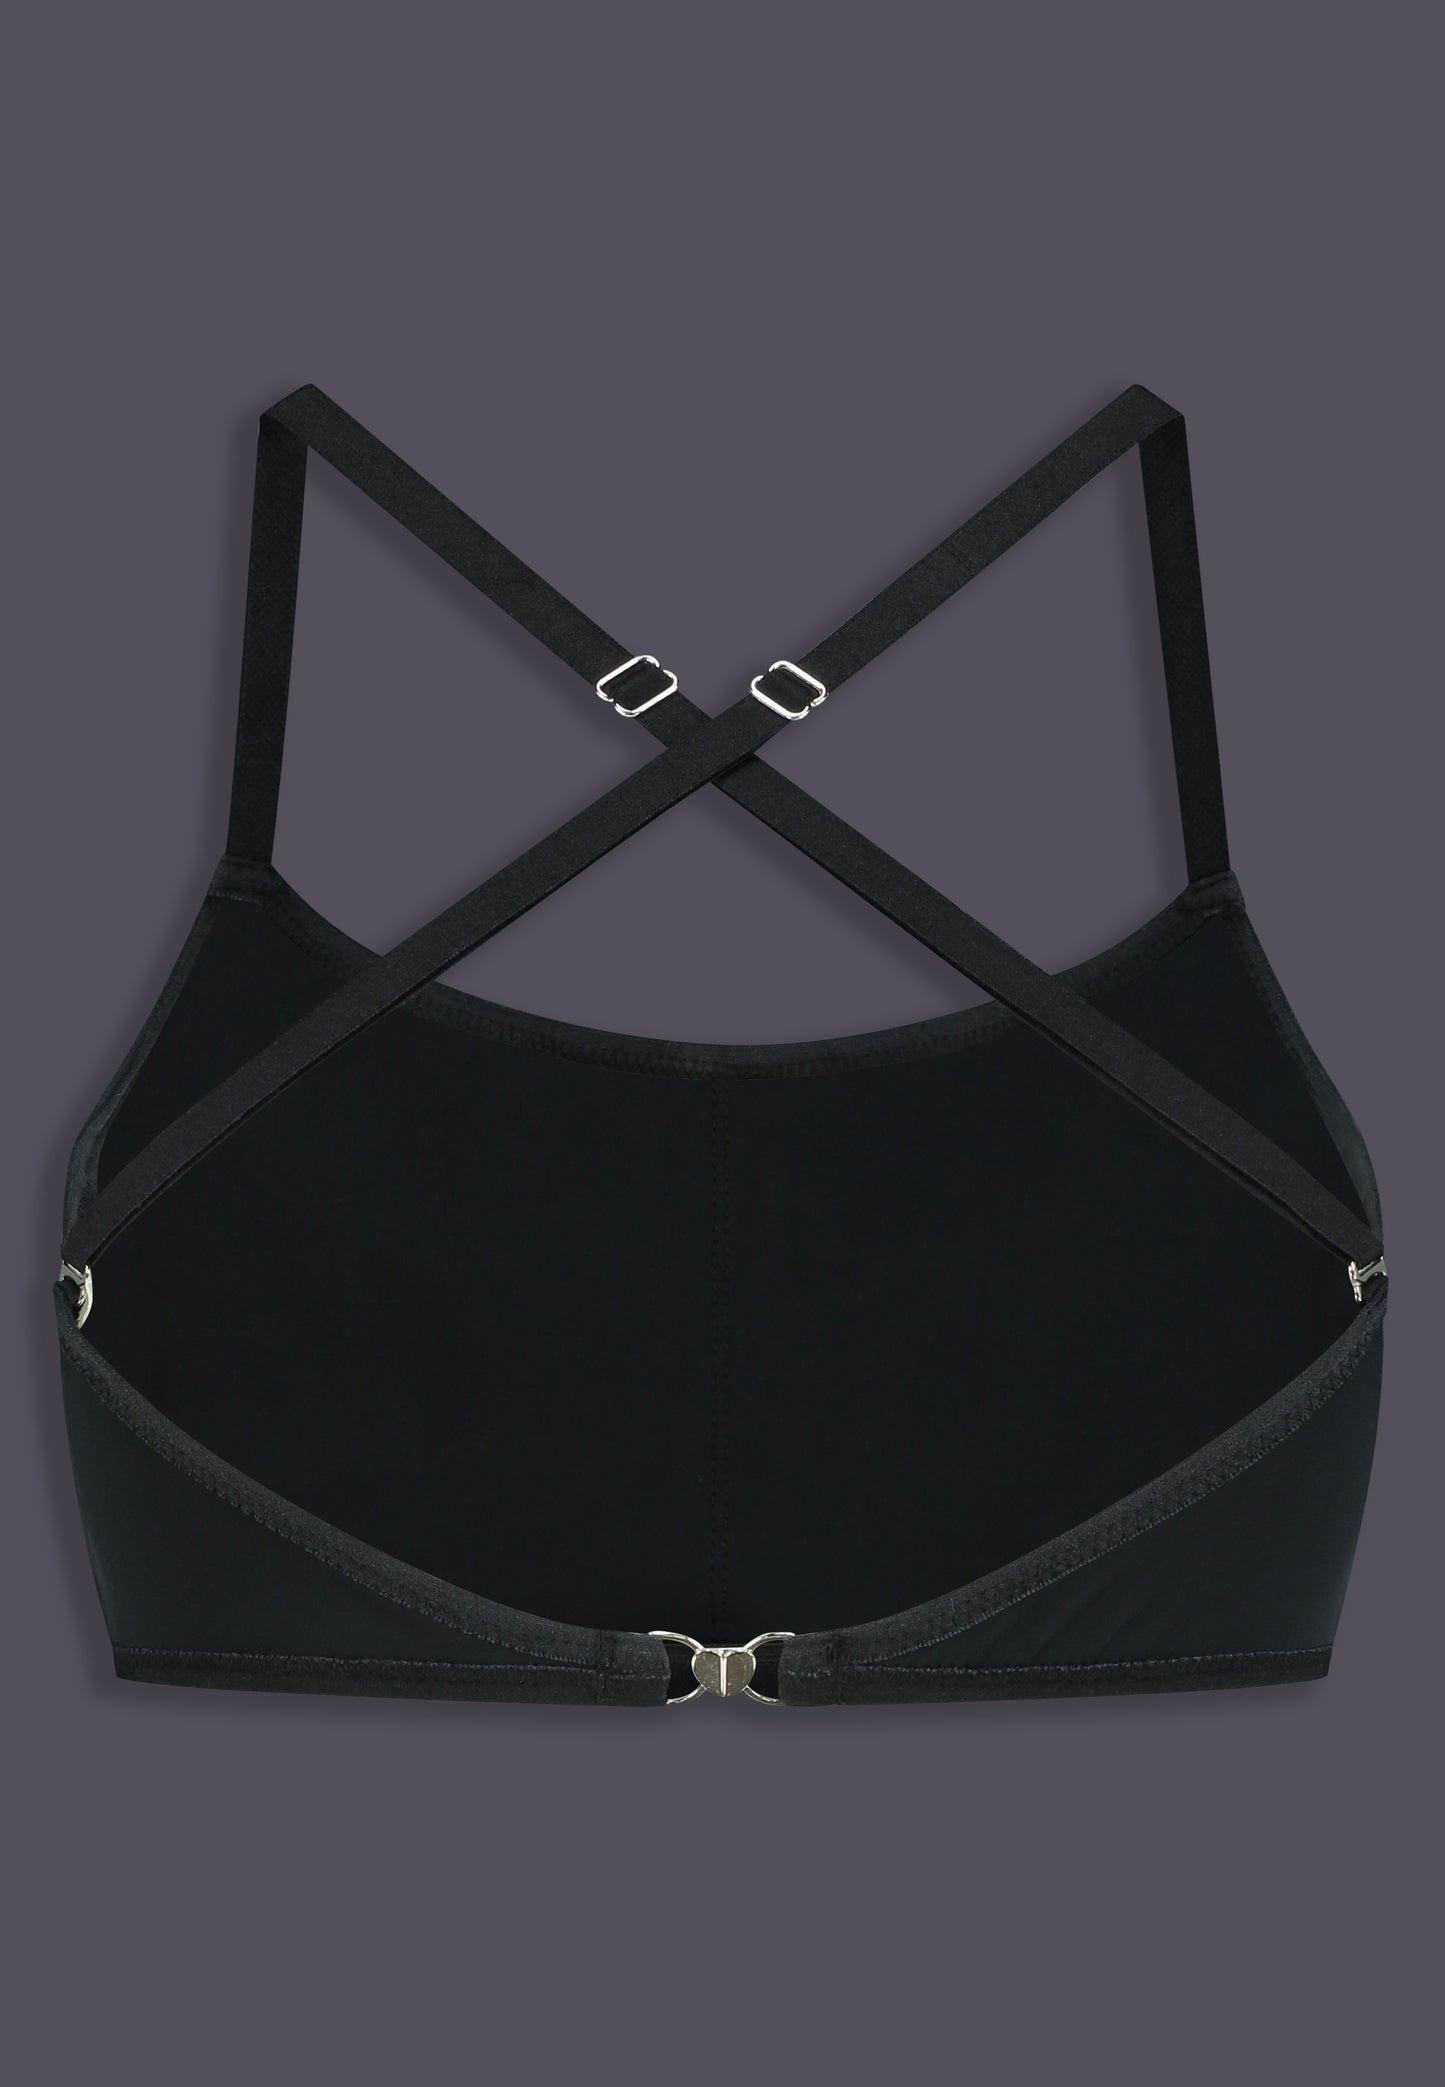 Bikinitop Advanced black, back view